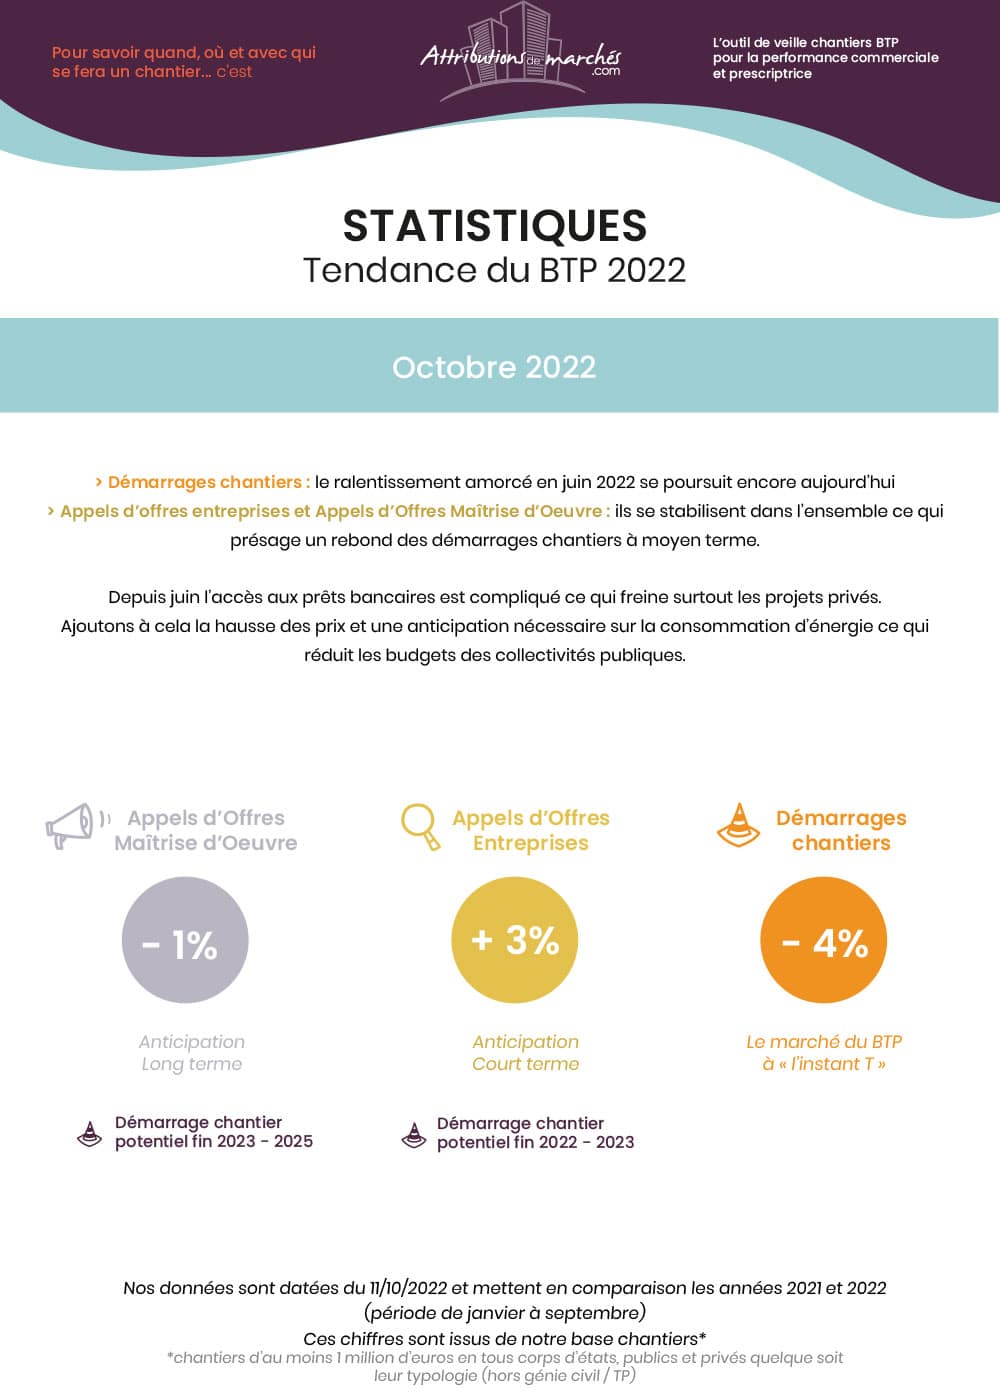 visuel newsletter statistiques btp octobre 2022